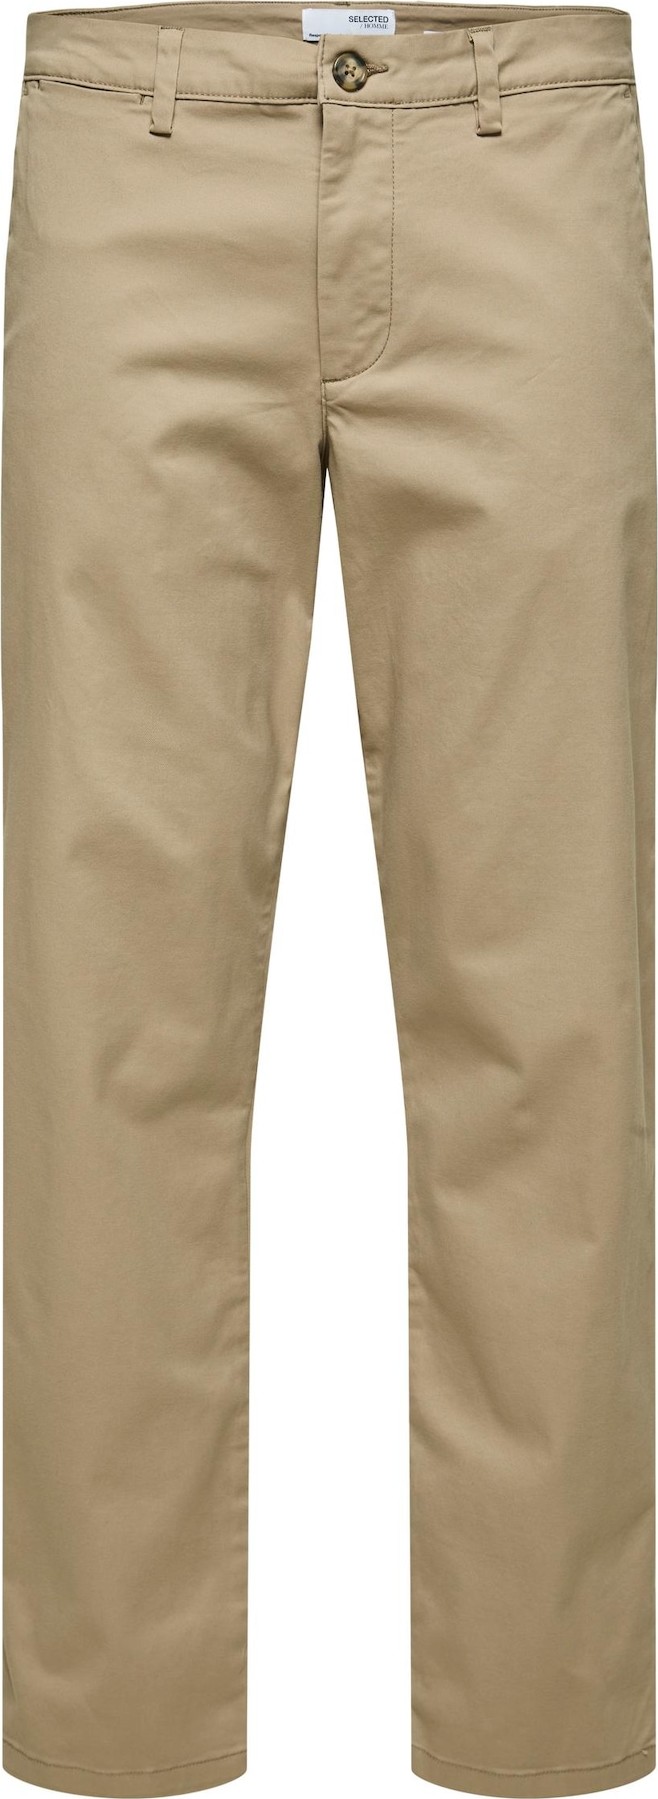 SELECTED HOMME Chino kalhoty 'New Miles' béžová / černá / bílá